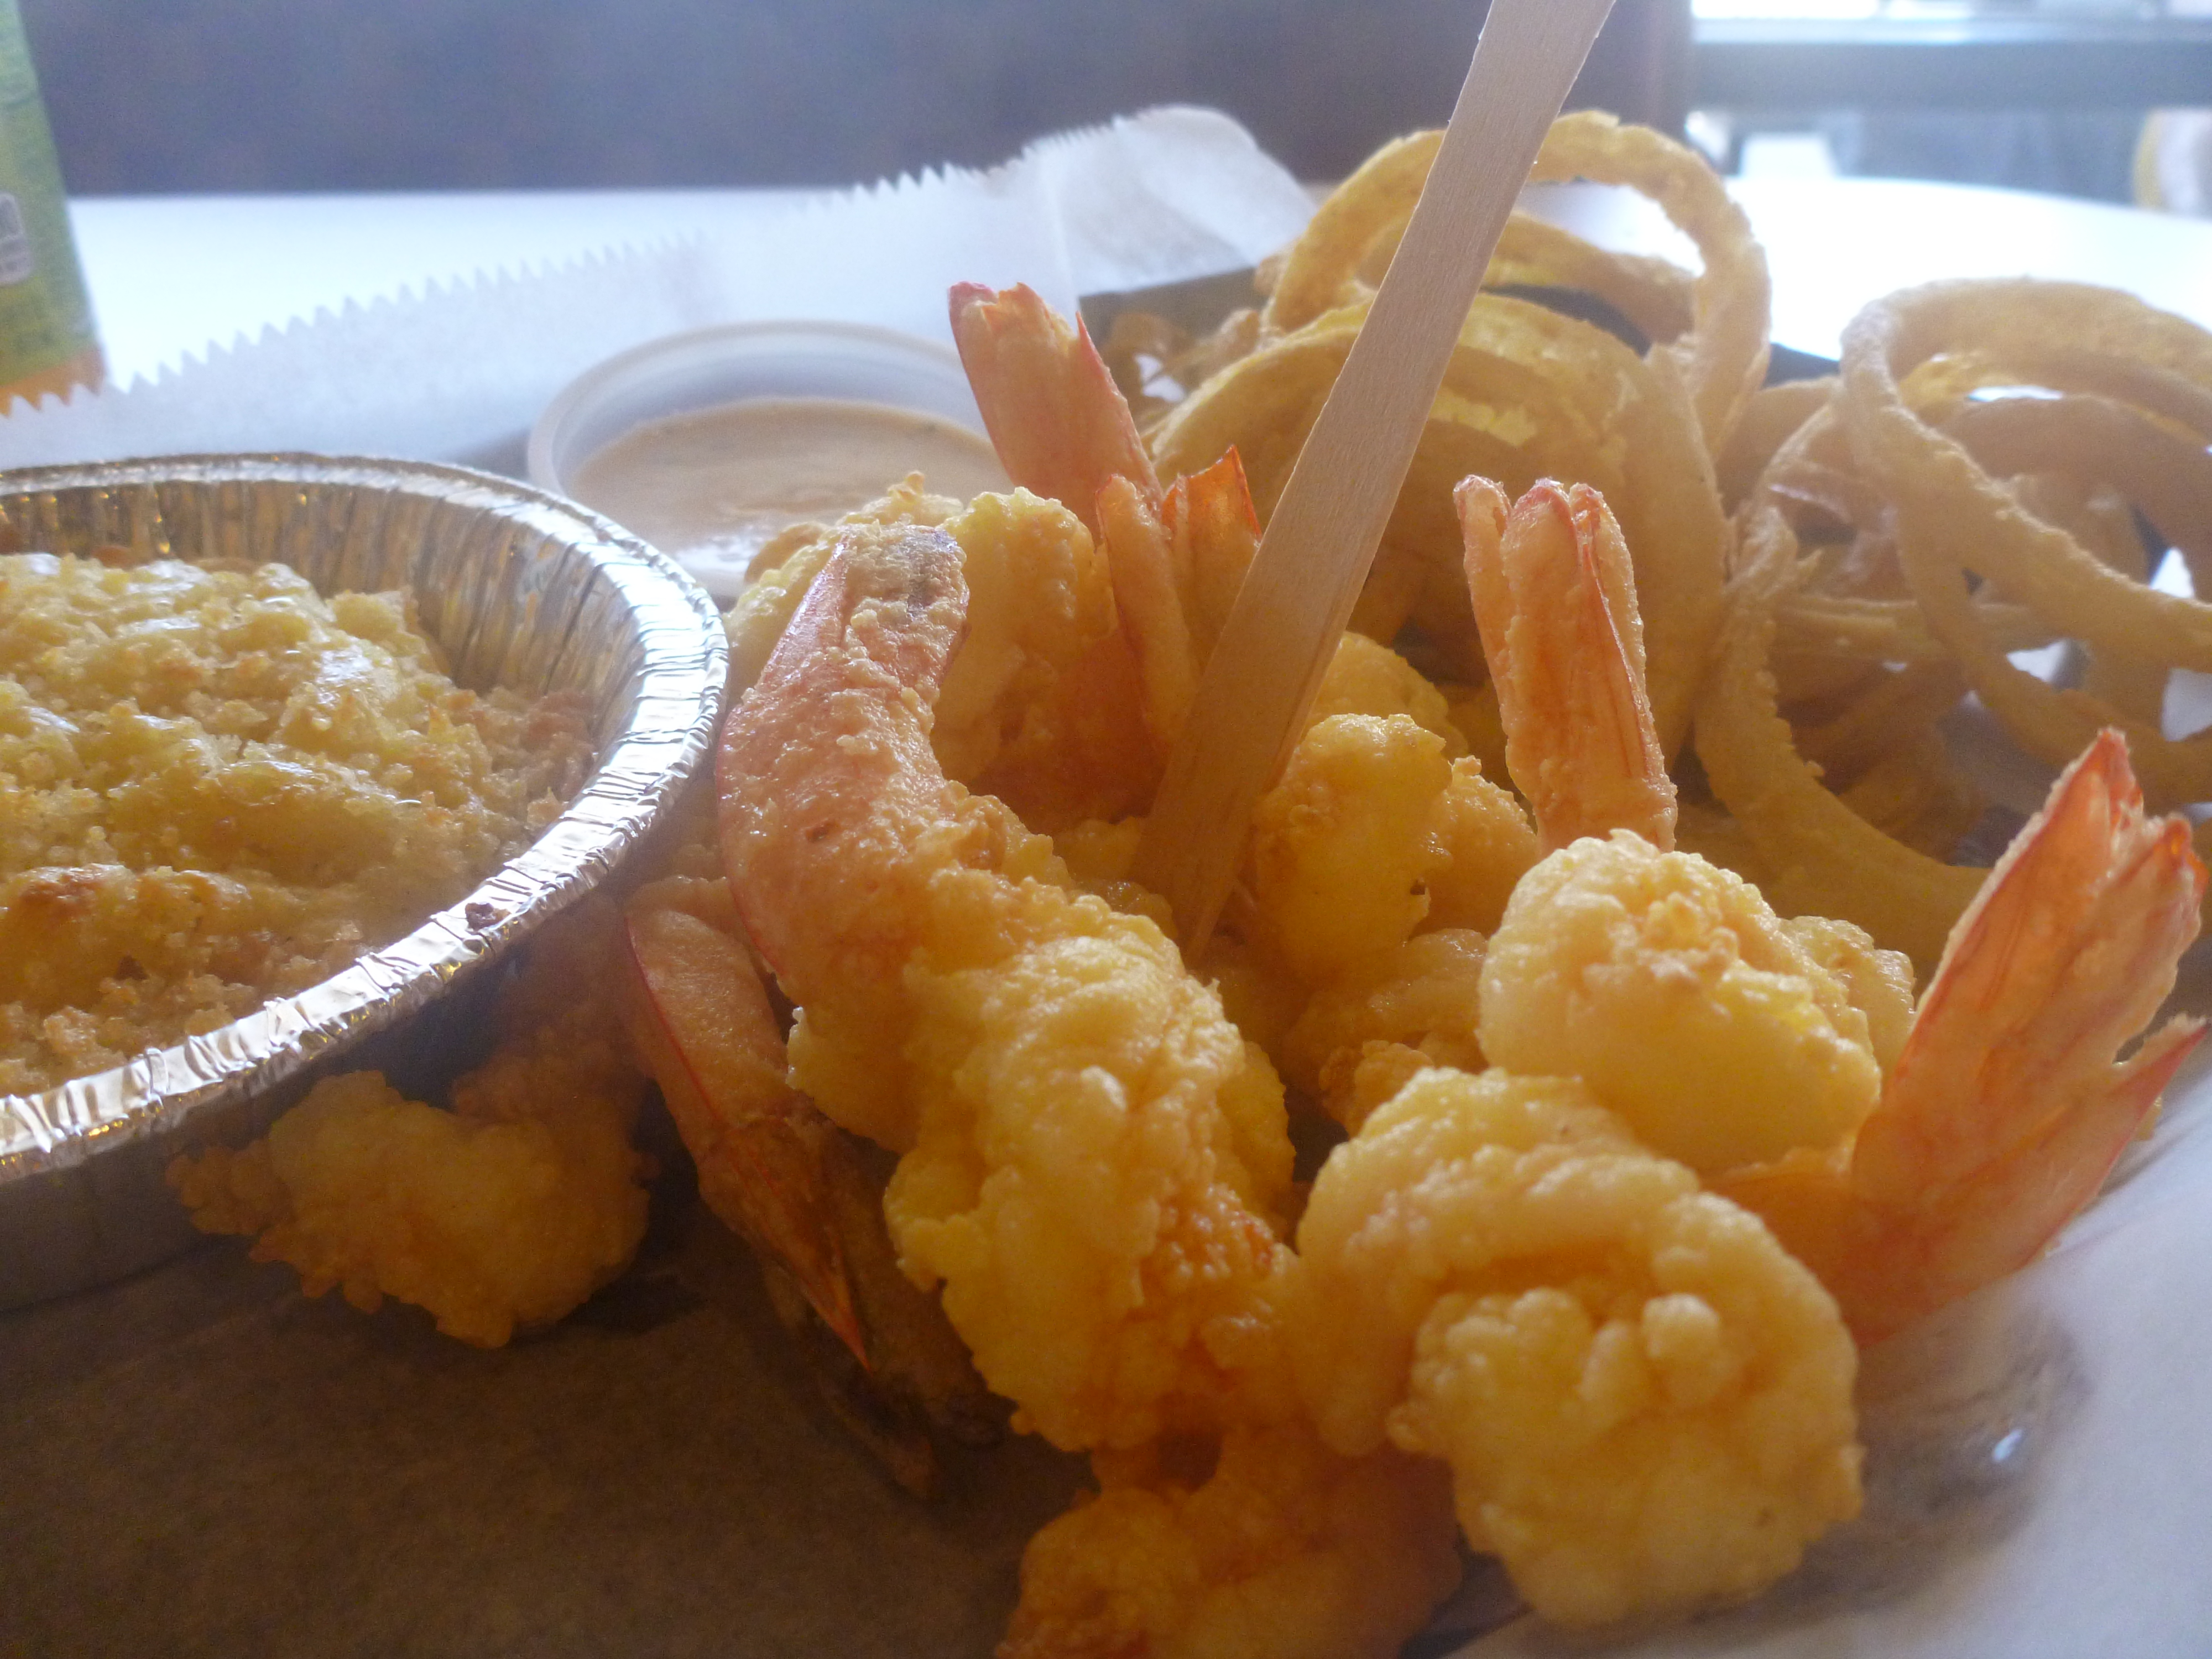 Stonington's Fried Shrimp - Orlando's Best Fried Shrimp ...